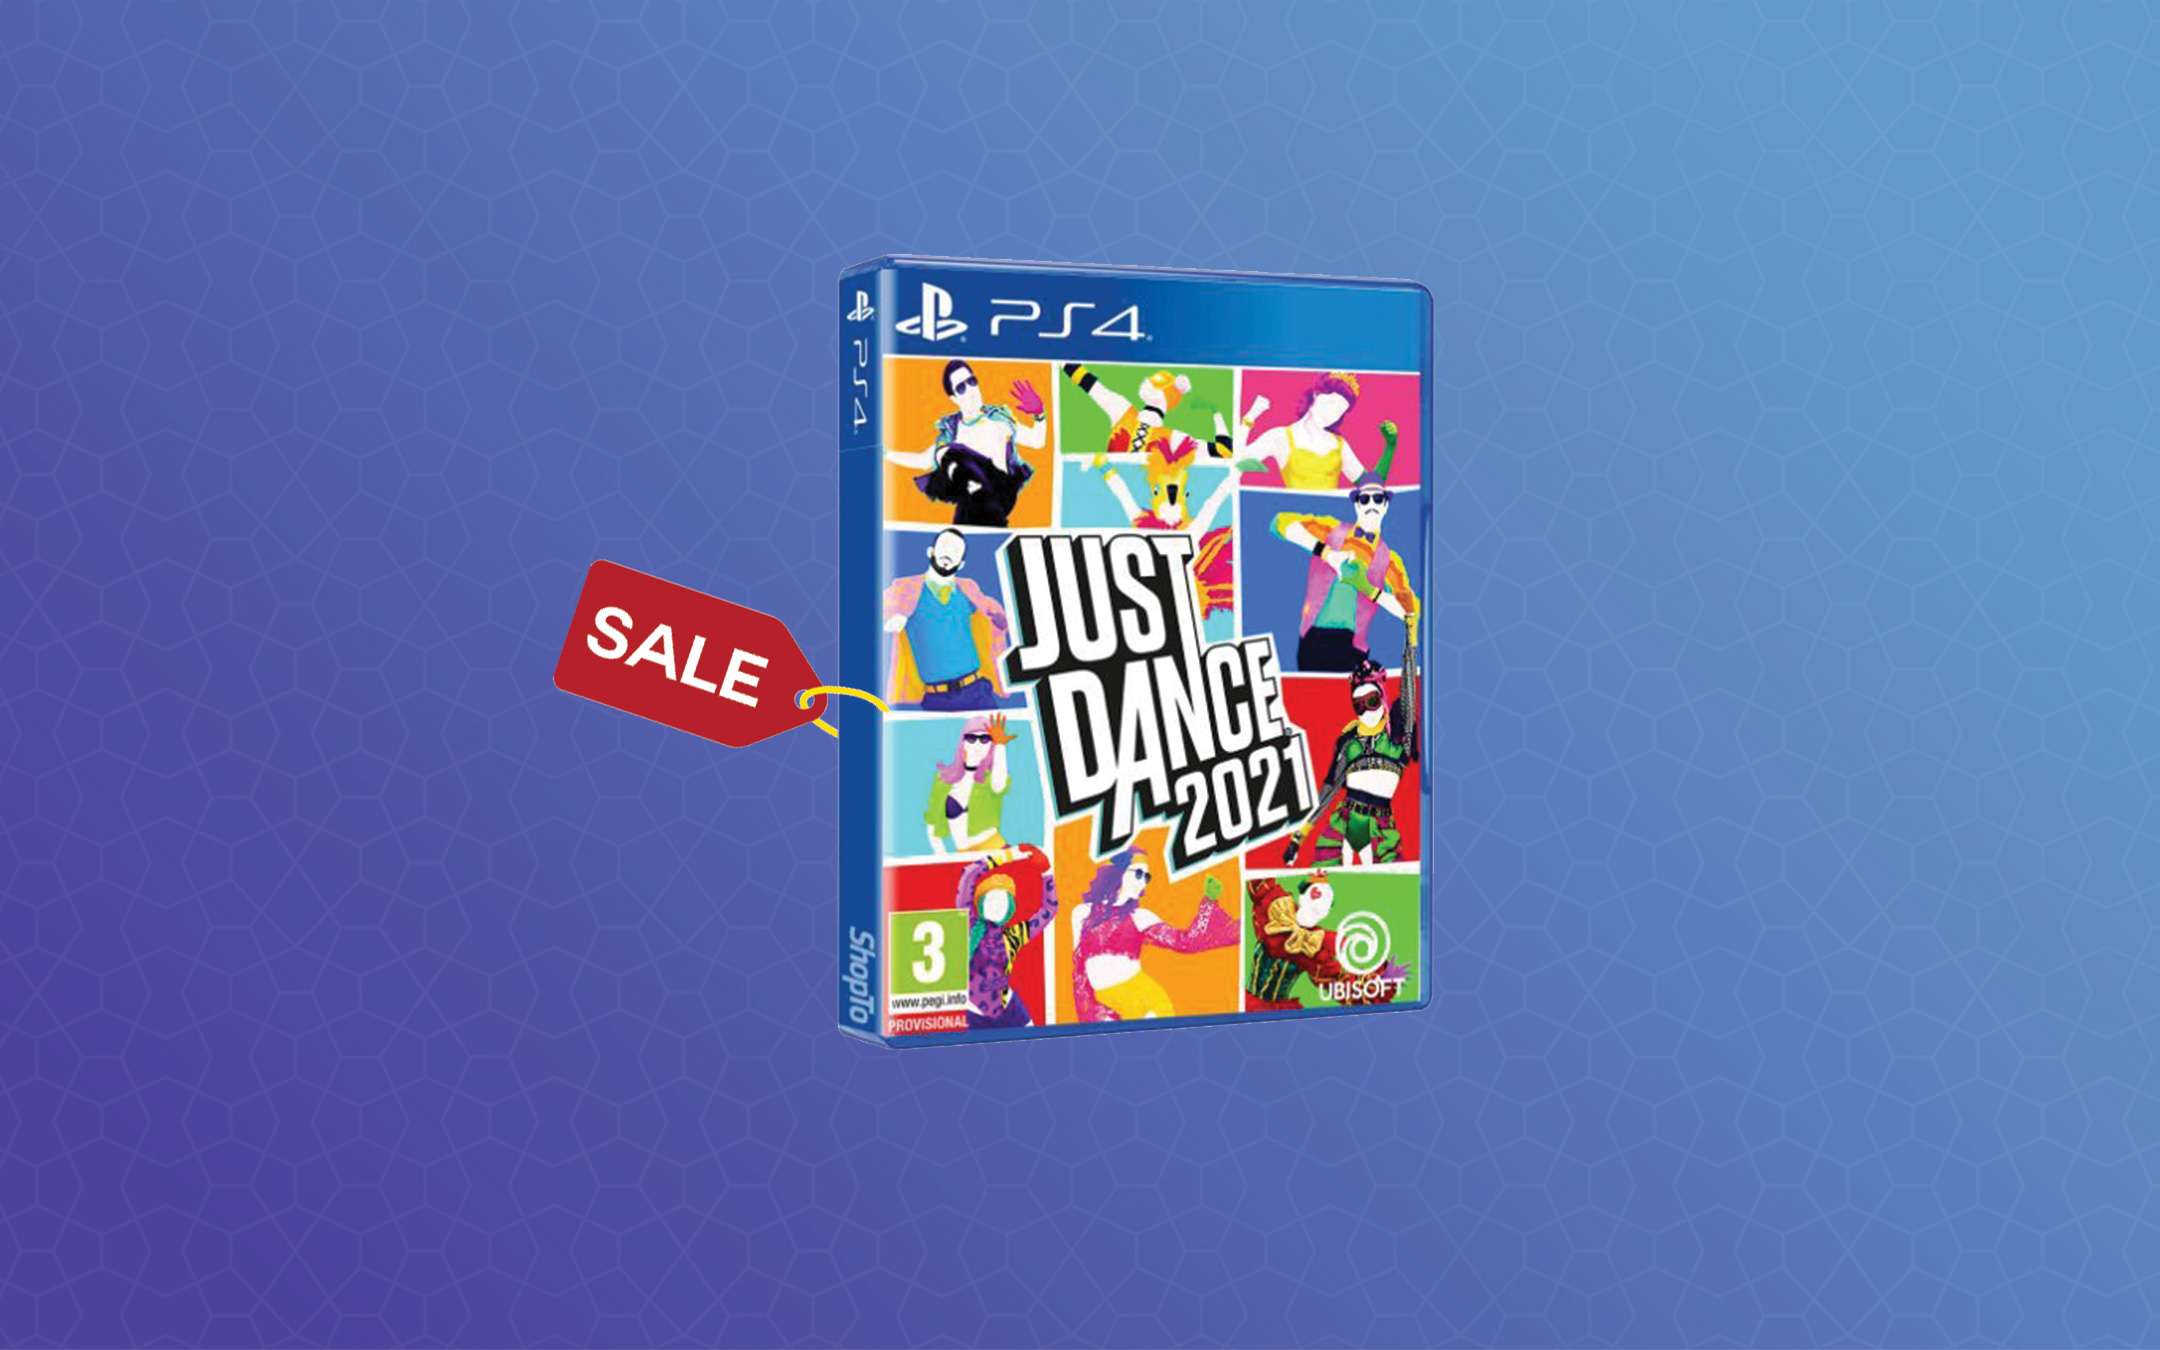 Just Dance 2021: Su PS4 oggi costa la metà